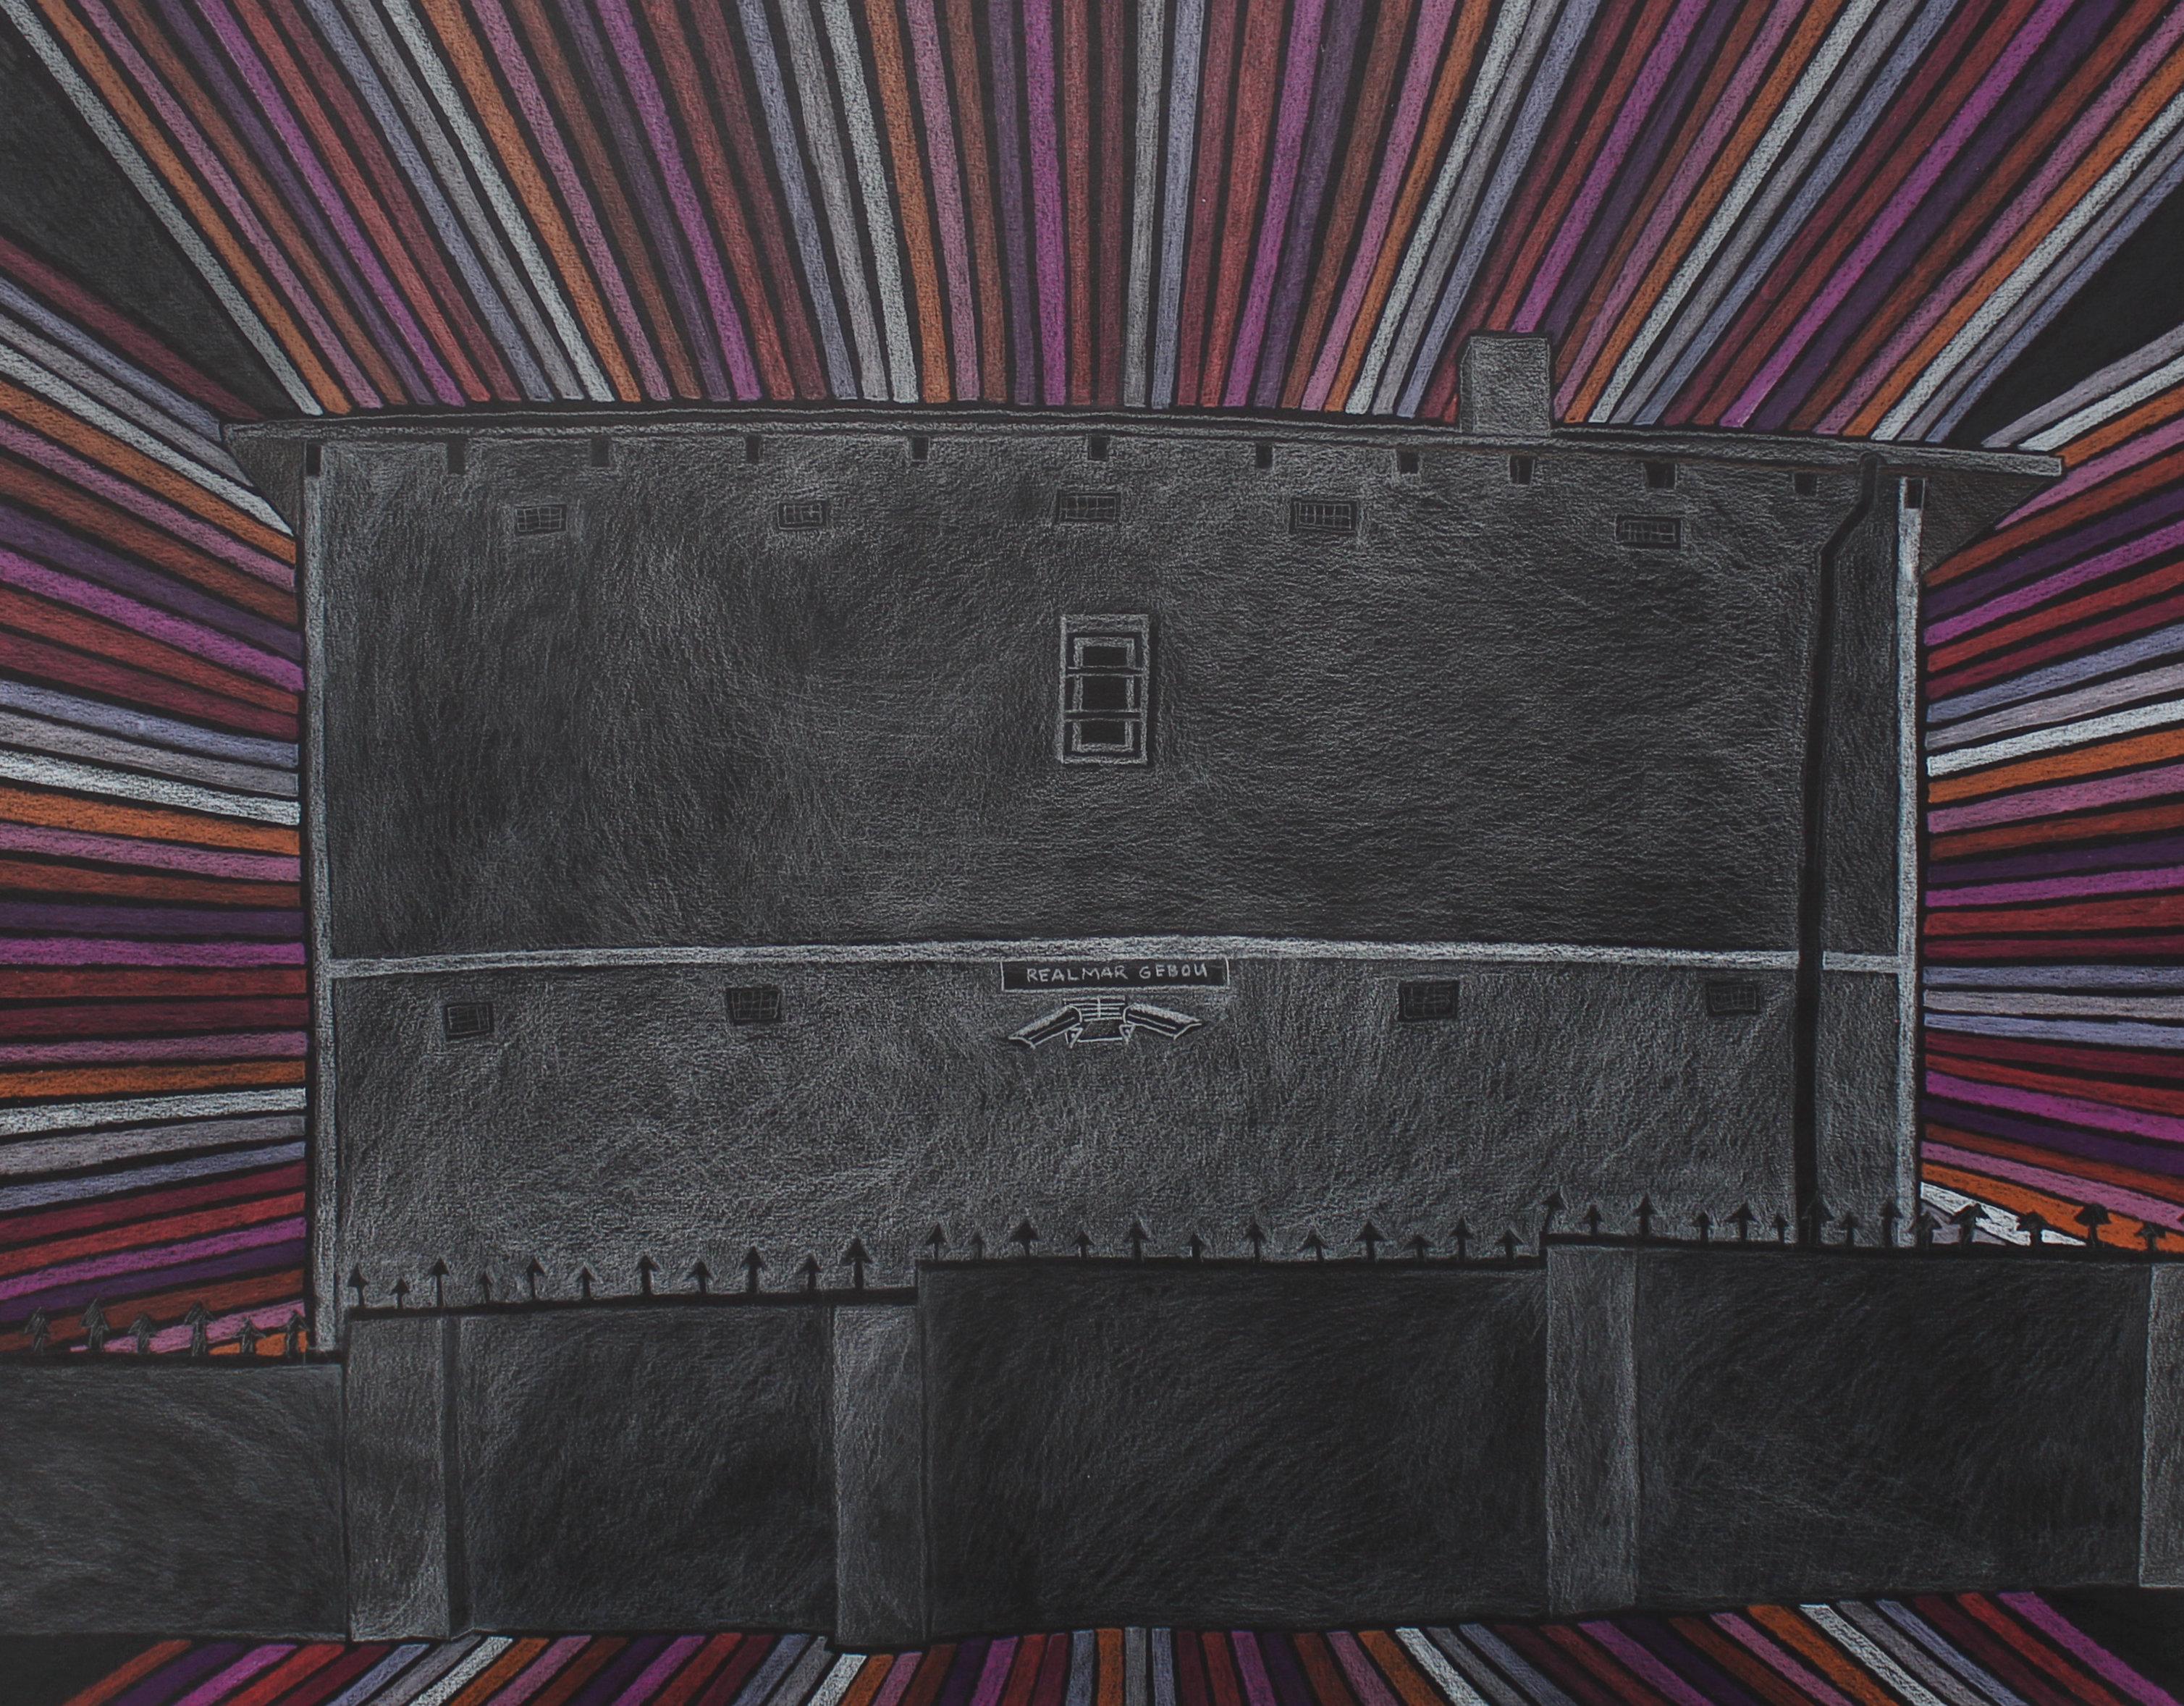 Realmar Gebou, 2022. Farbstift auf schwarzem Papier. 55.5 x 66cm

Als Erweiterung ihrer Serie Opening Up